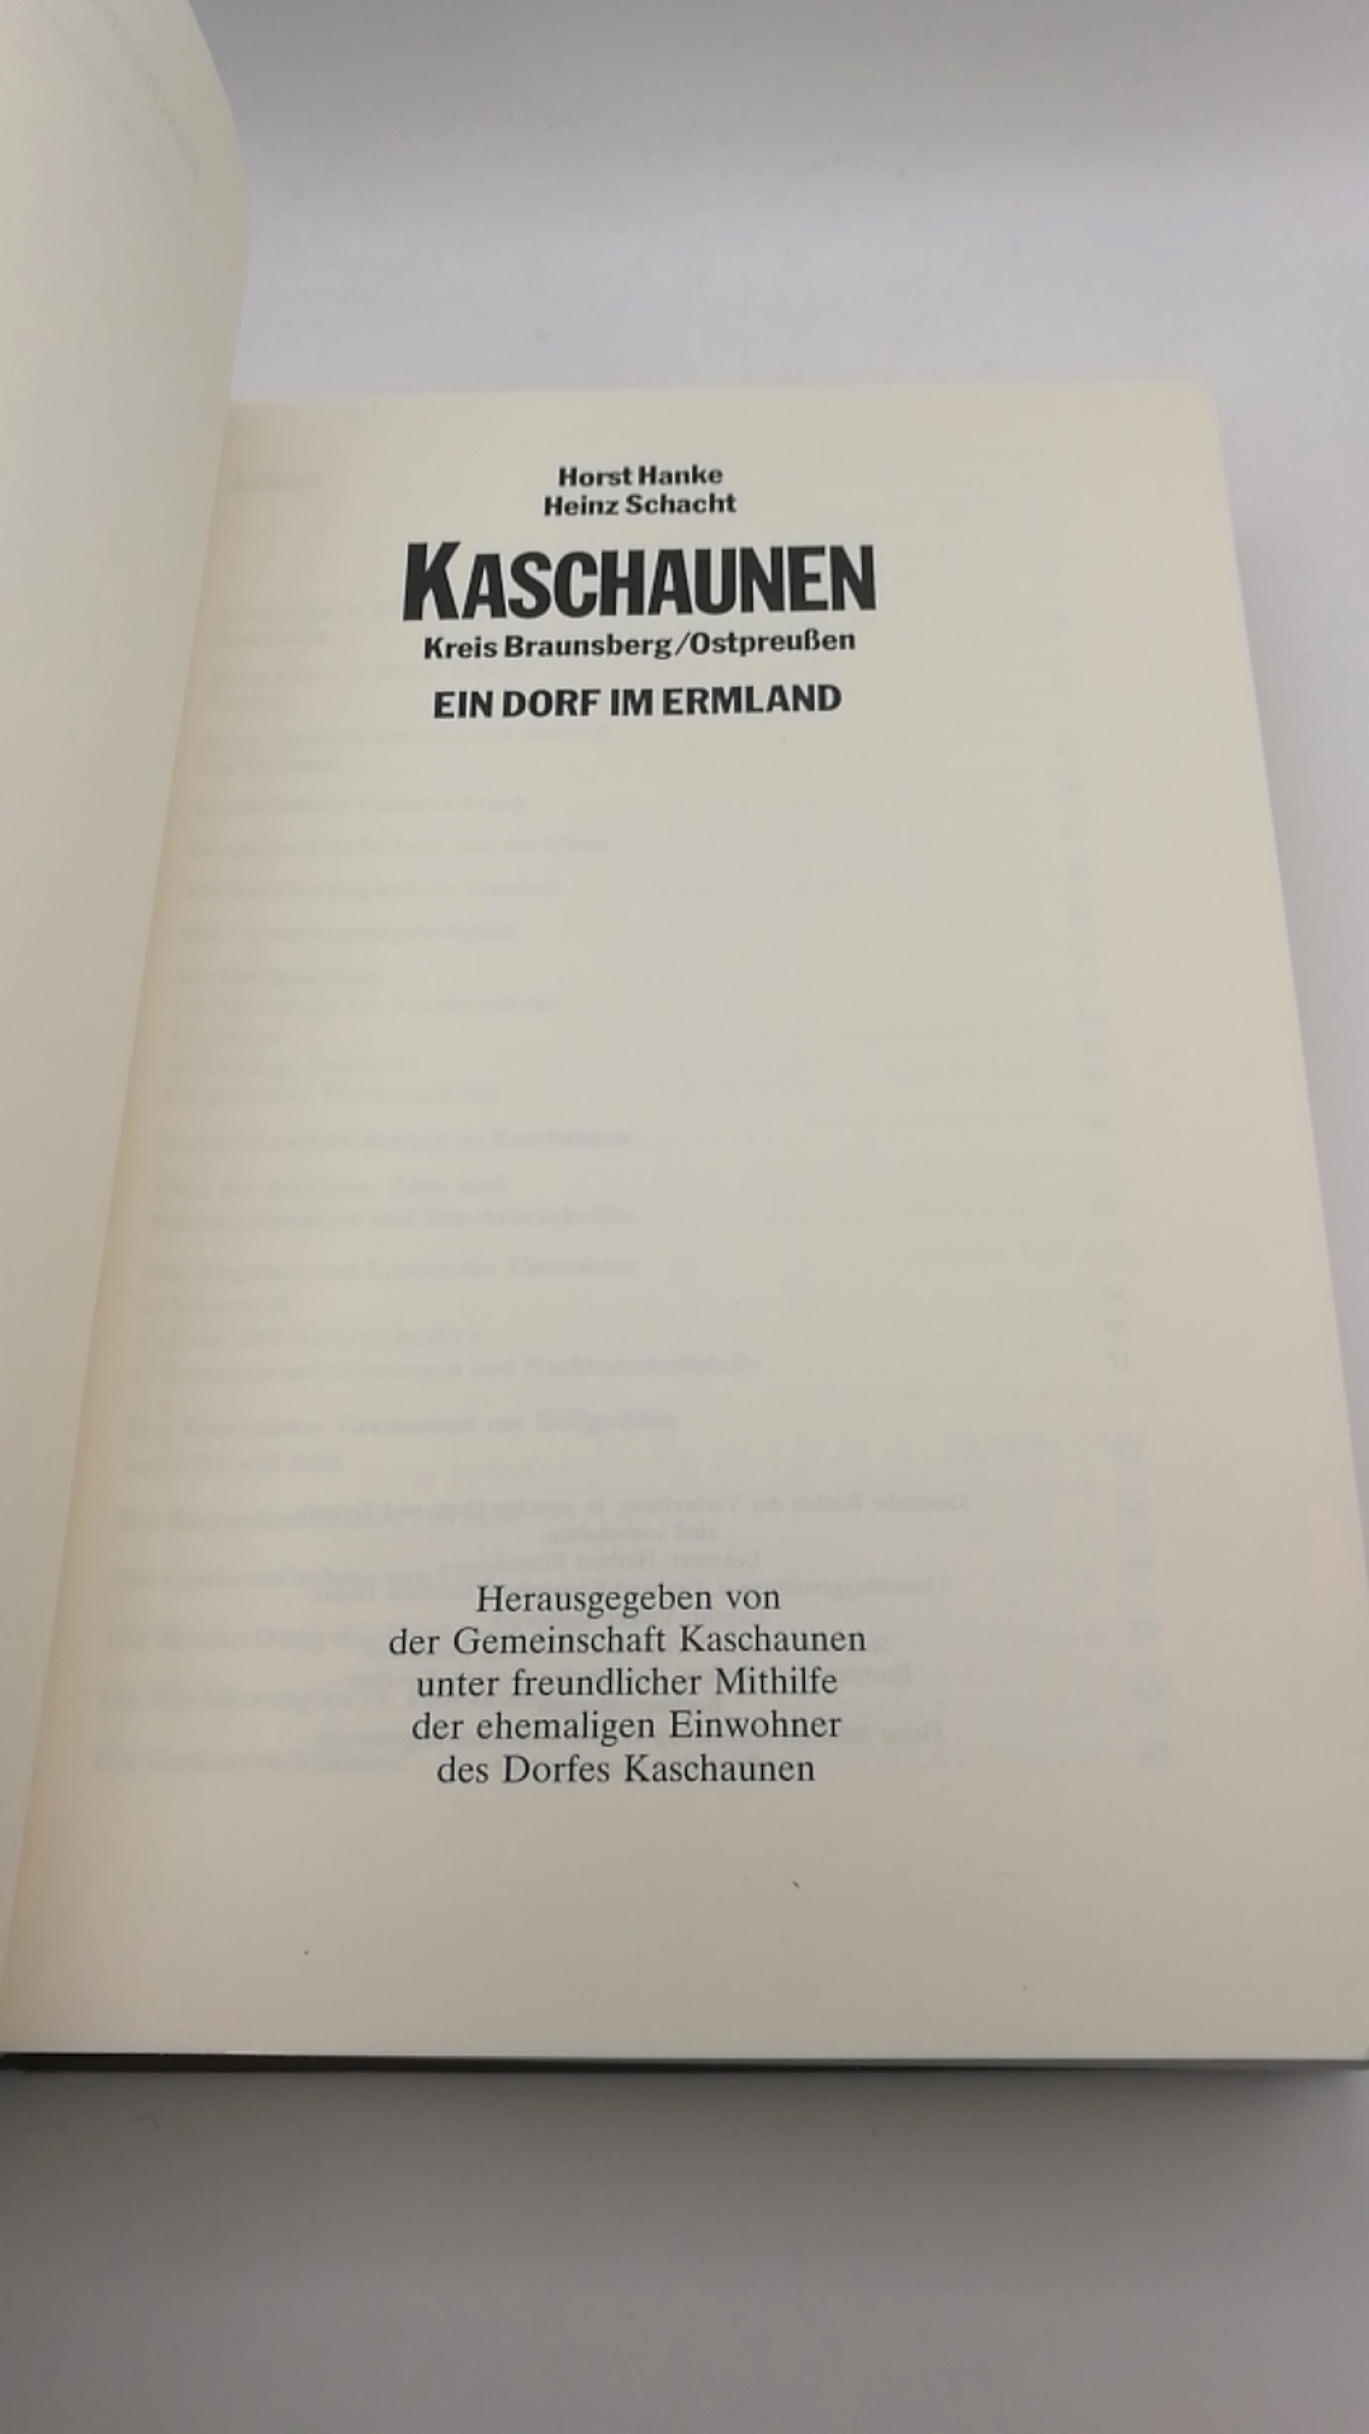 Hanke /Schacht, Horst / Heinz: Kaschaunen Kreis Braunsberg Ostpreußen. Ein Dorf im Ermland.